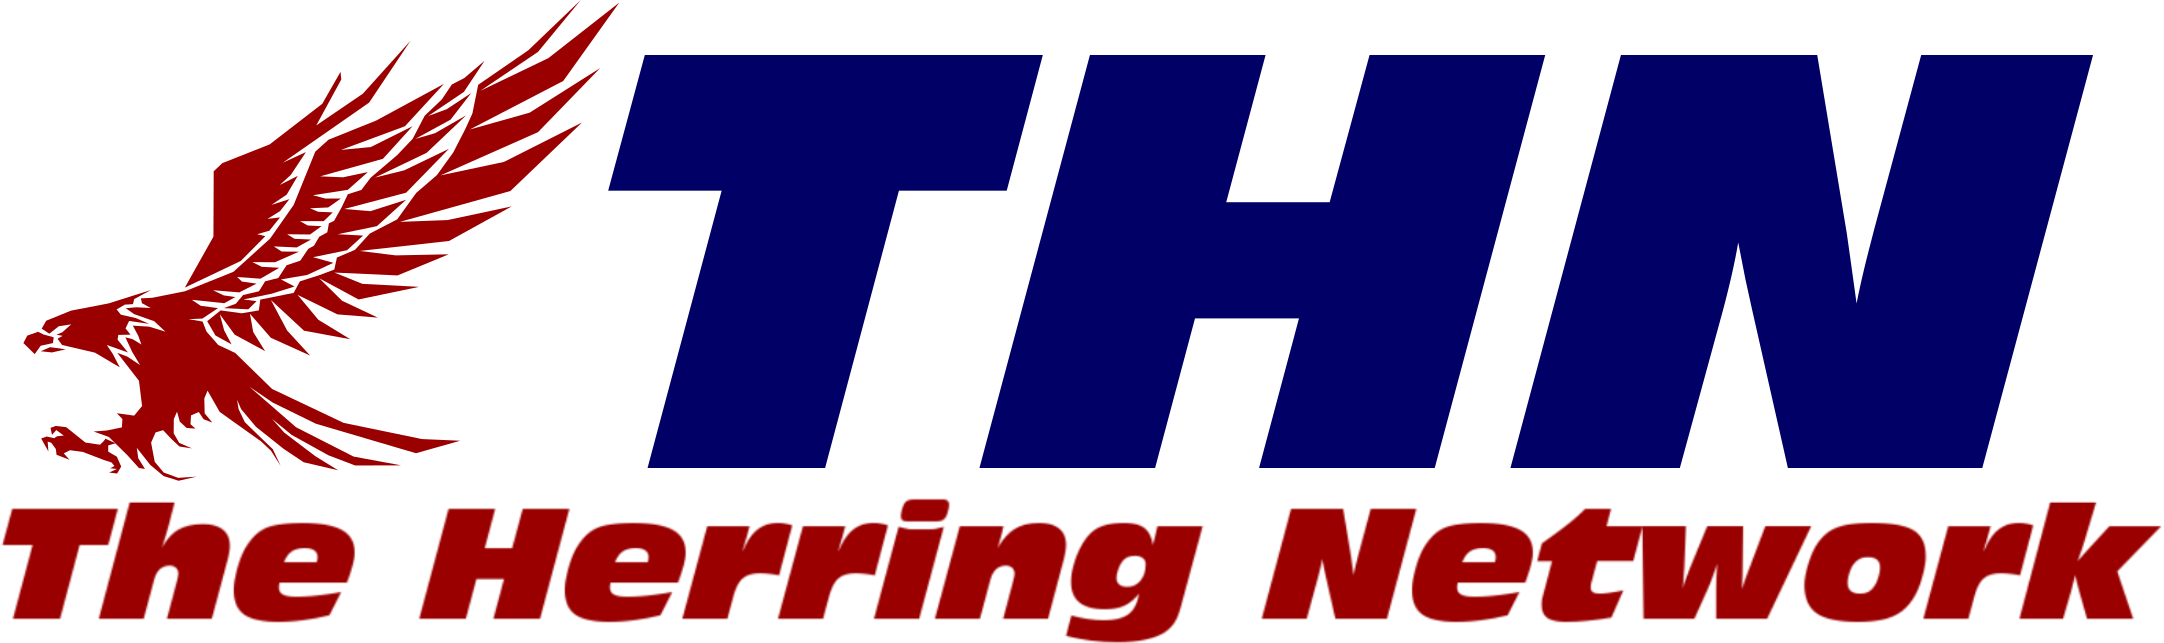 Herring logo.png